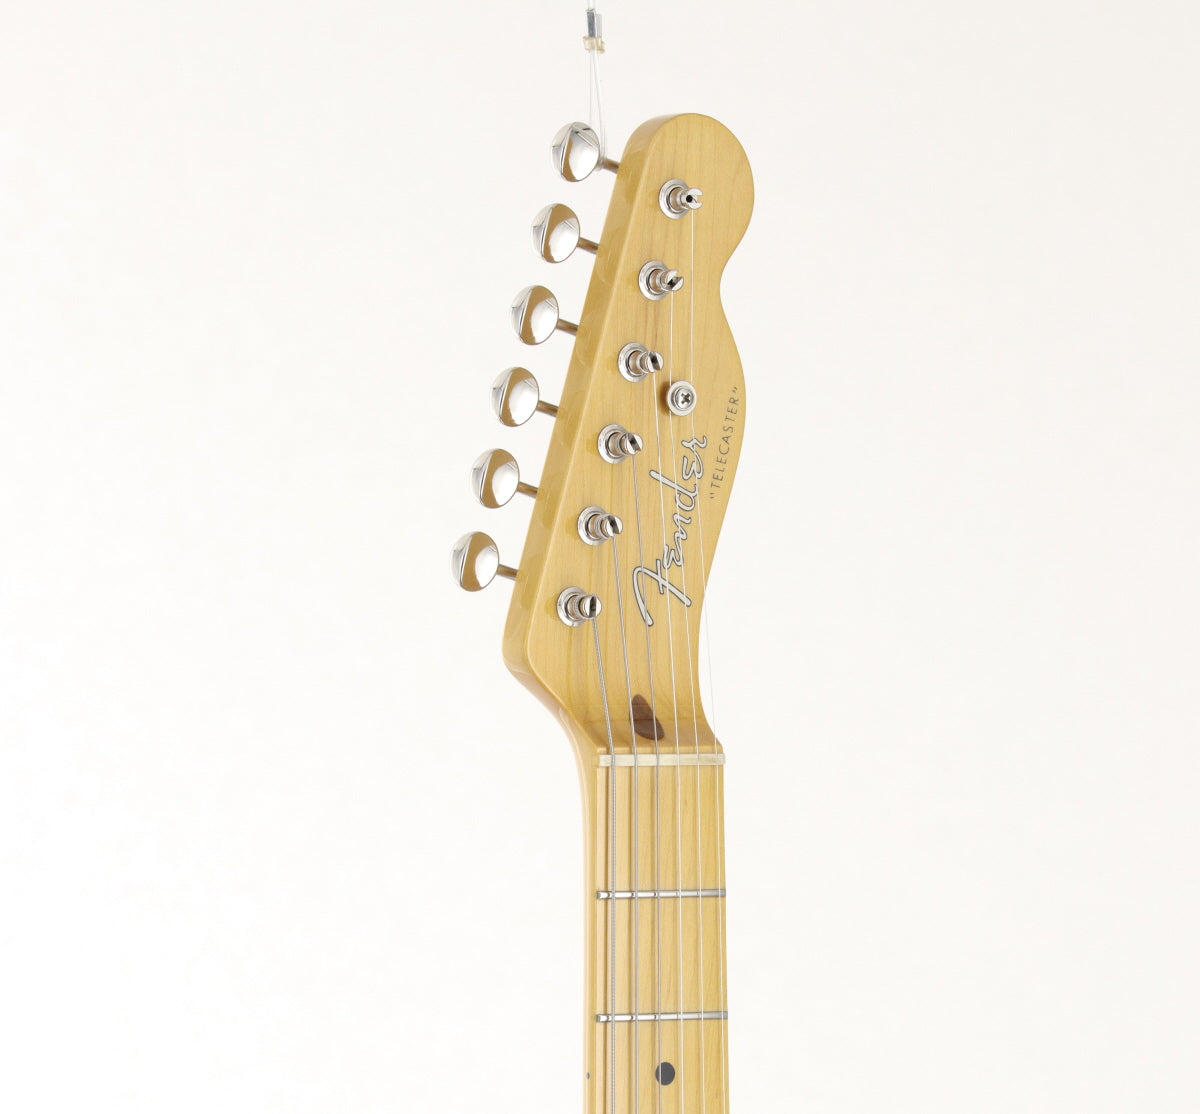 [SN JD12016763] USED Fender JAPAN / TL52 VNT Vintage Natural 2012 [09]